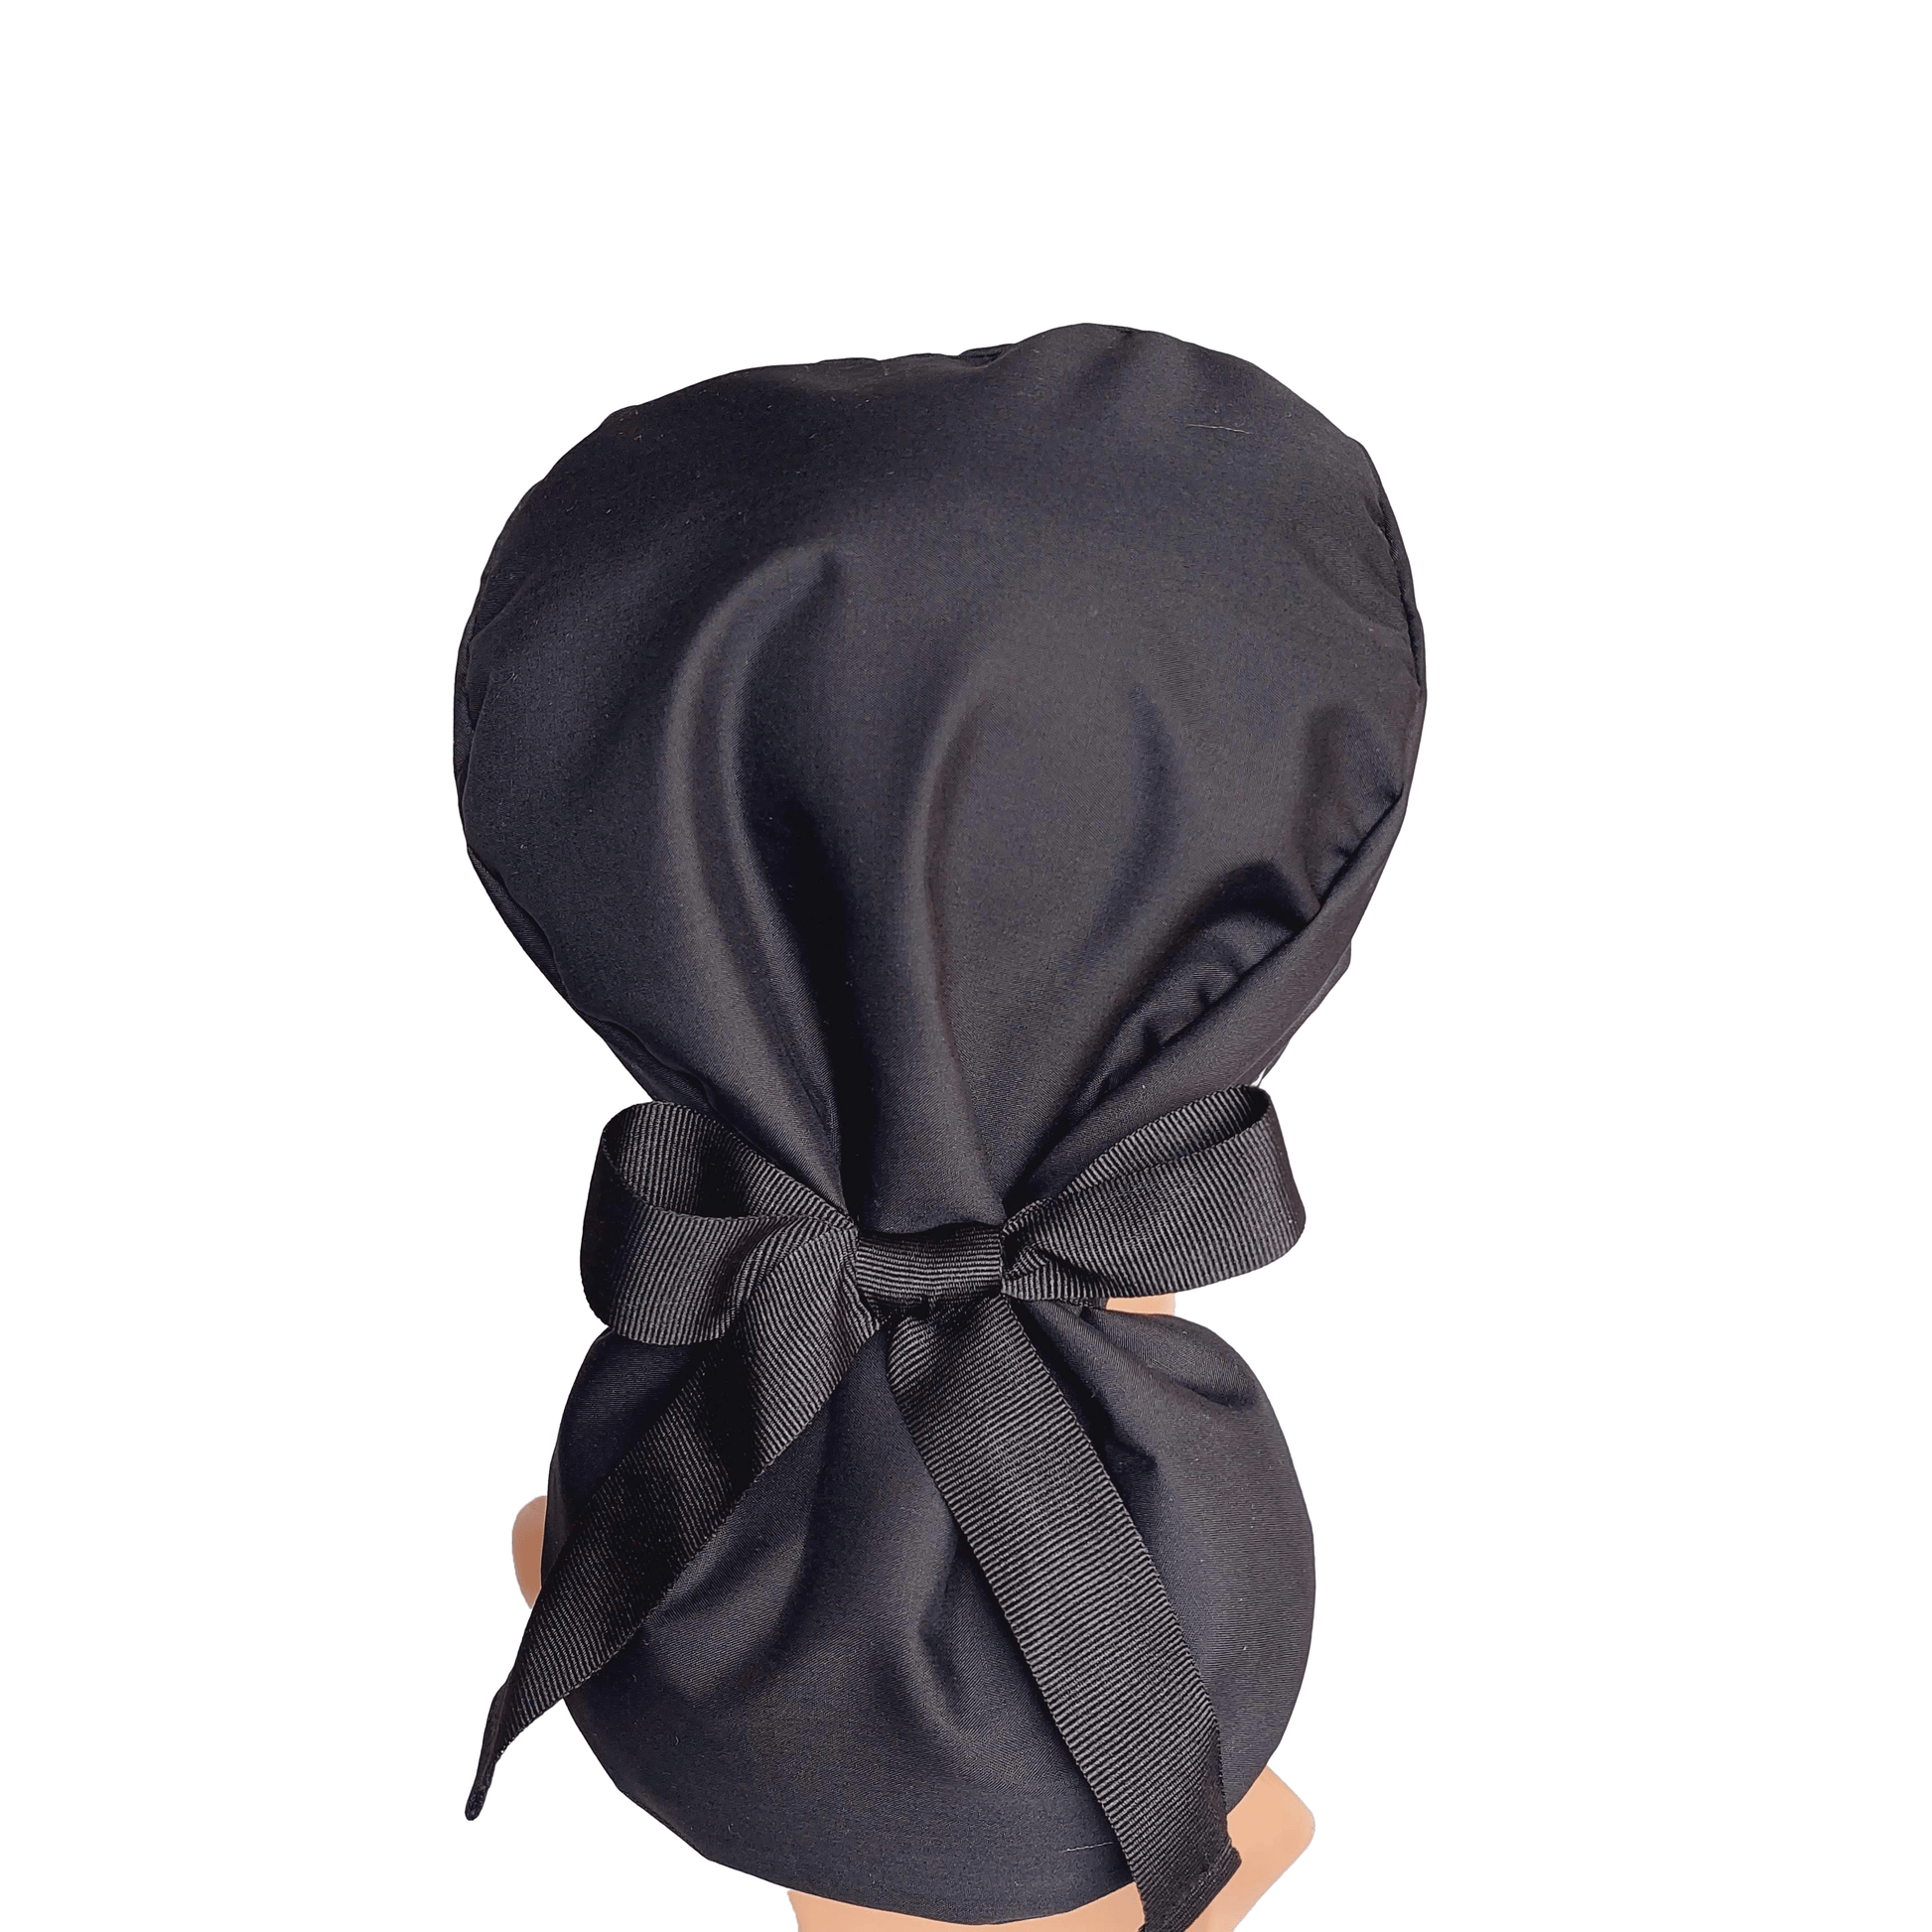 Ponytail Scrub Cap -  Surgical Cap Solid Black -Scrub Hat - [scrub_hat]-[scrub_cap_for_women]-[surgical_cap]